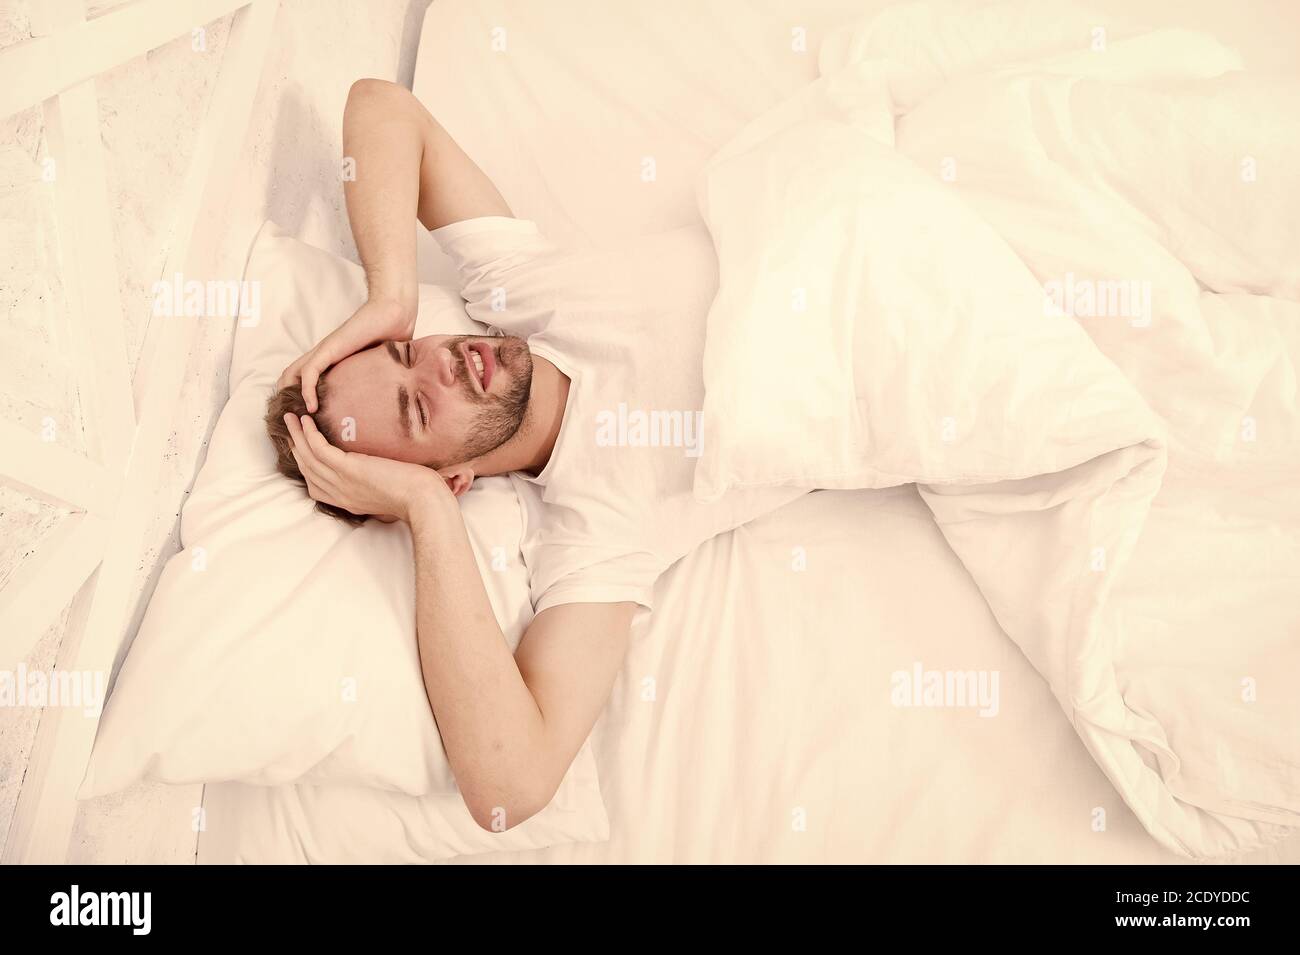 Schlafprobleme können morgens zu Kopfschmerzen führen. Gutaussehender Mann, der sich im Bett entspannen kann. Schnarchen kann zu erhöhten Risikopschmerzen führen. Häufiges Symptom der Schlafapnoe. Ursachen für Kopfschmerzen am frühen Morgen. Migräne-Kopfschmerzen. Stockfoto